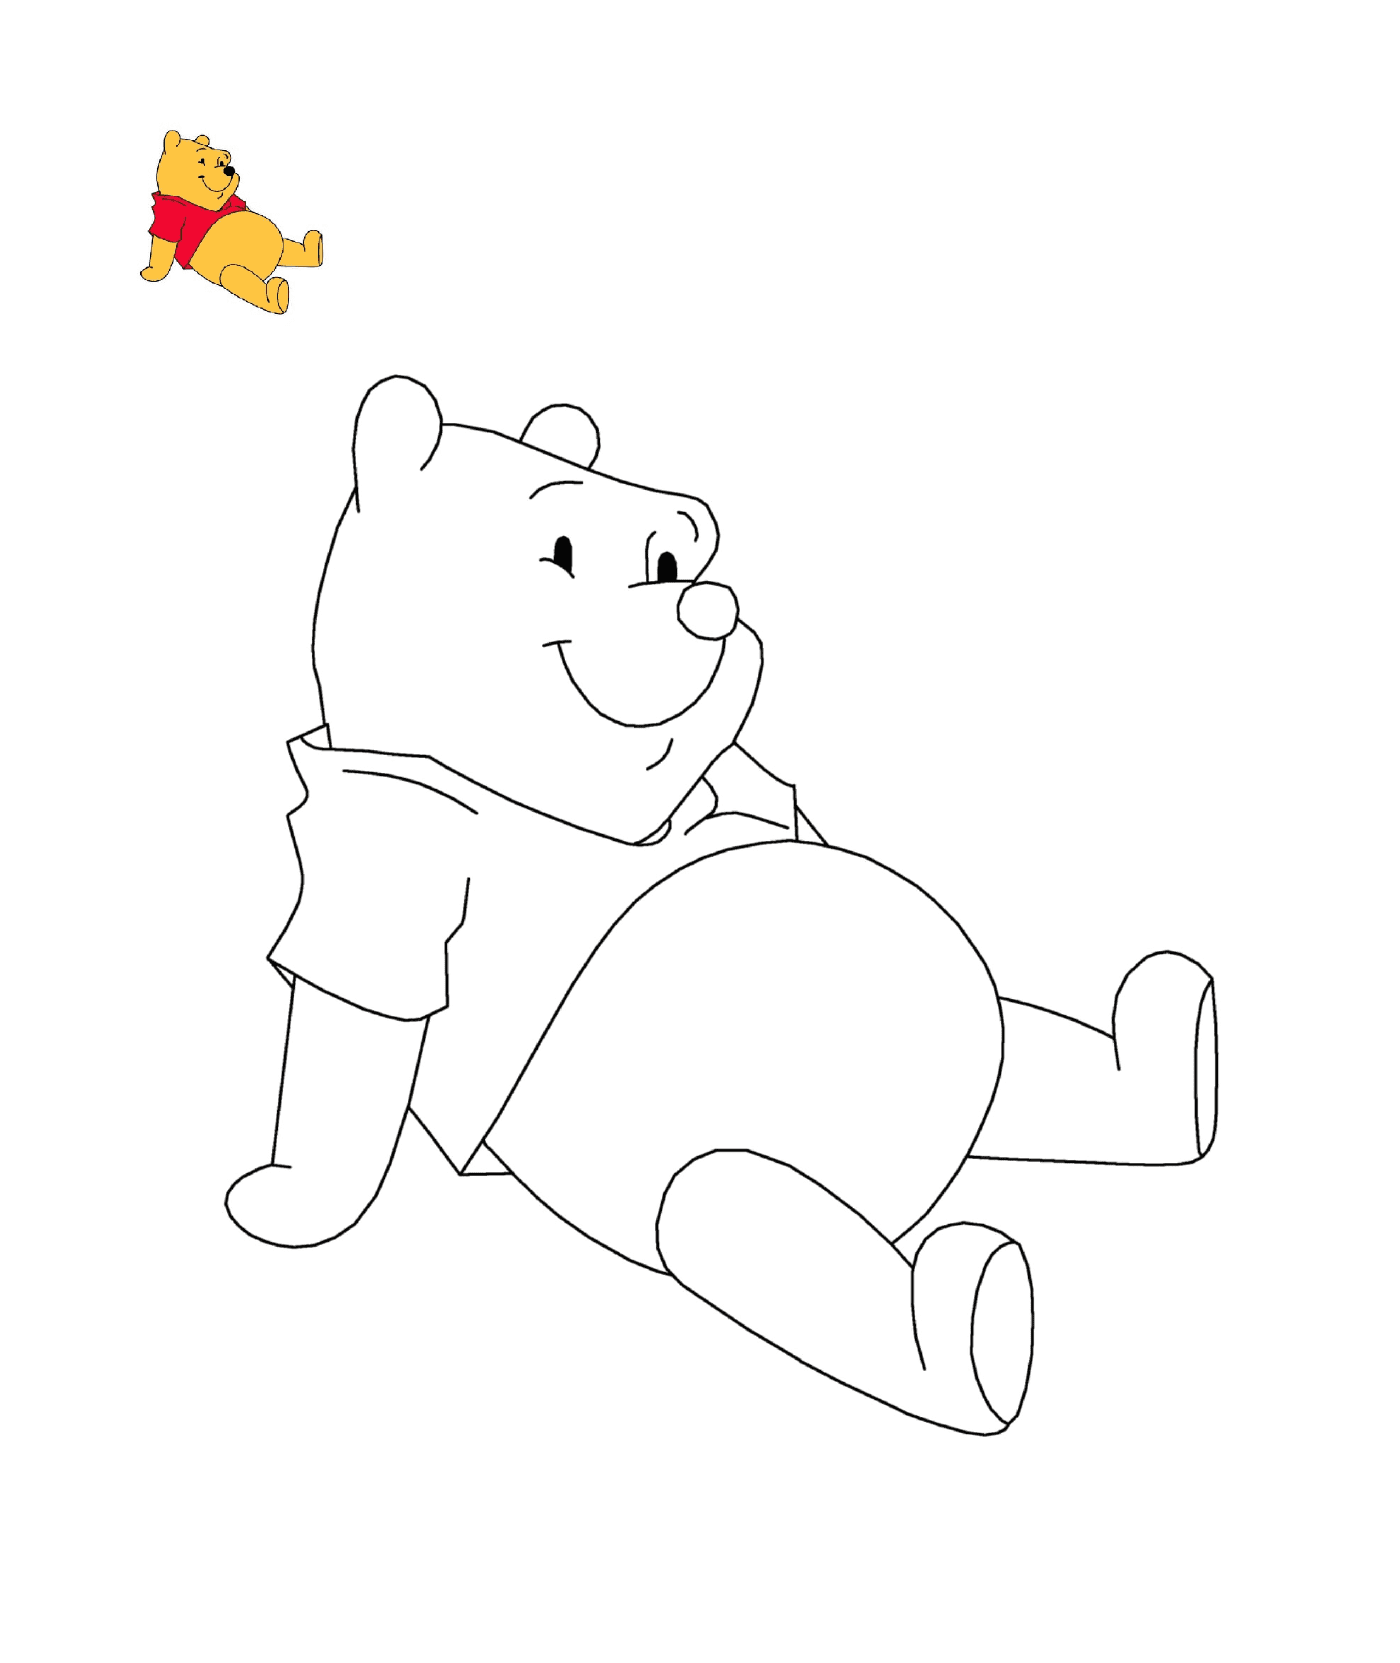  Winnie el oso está sentado en el suelo 